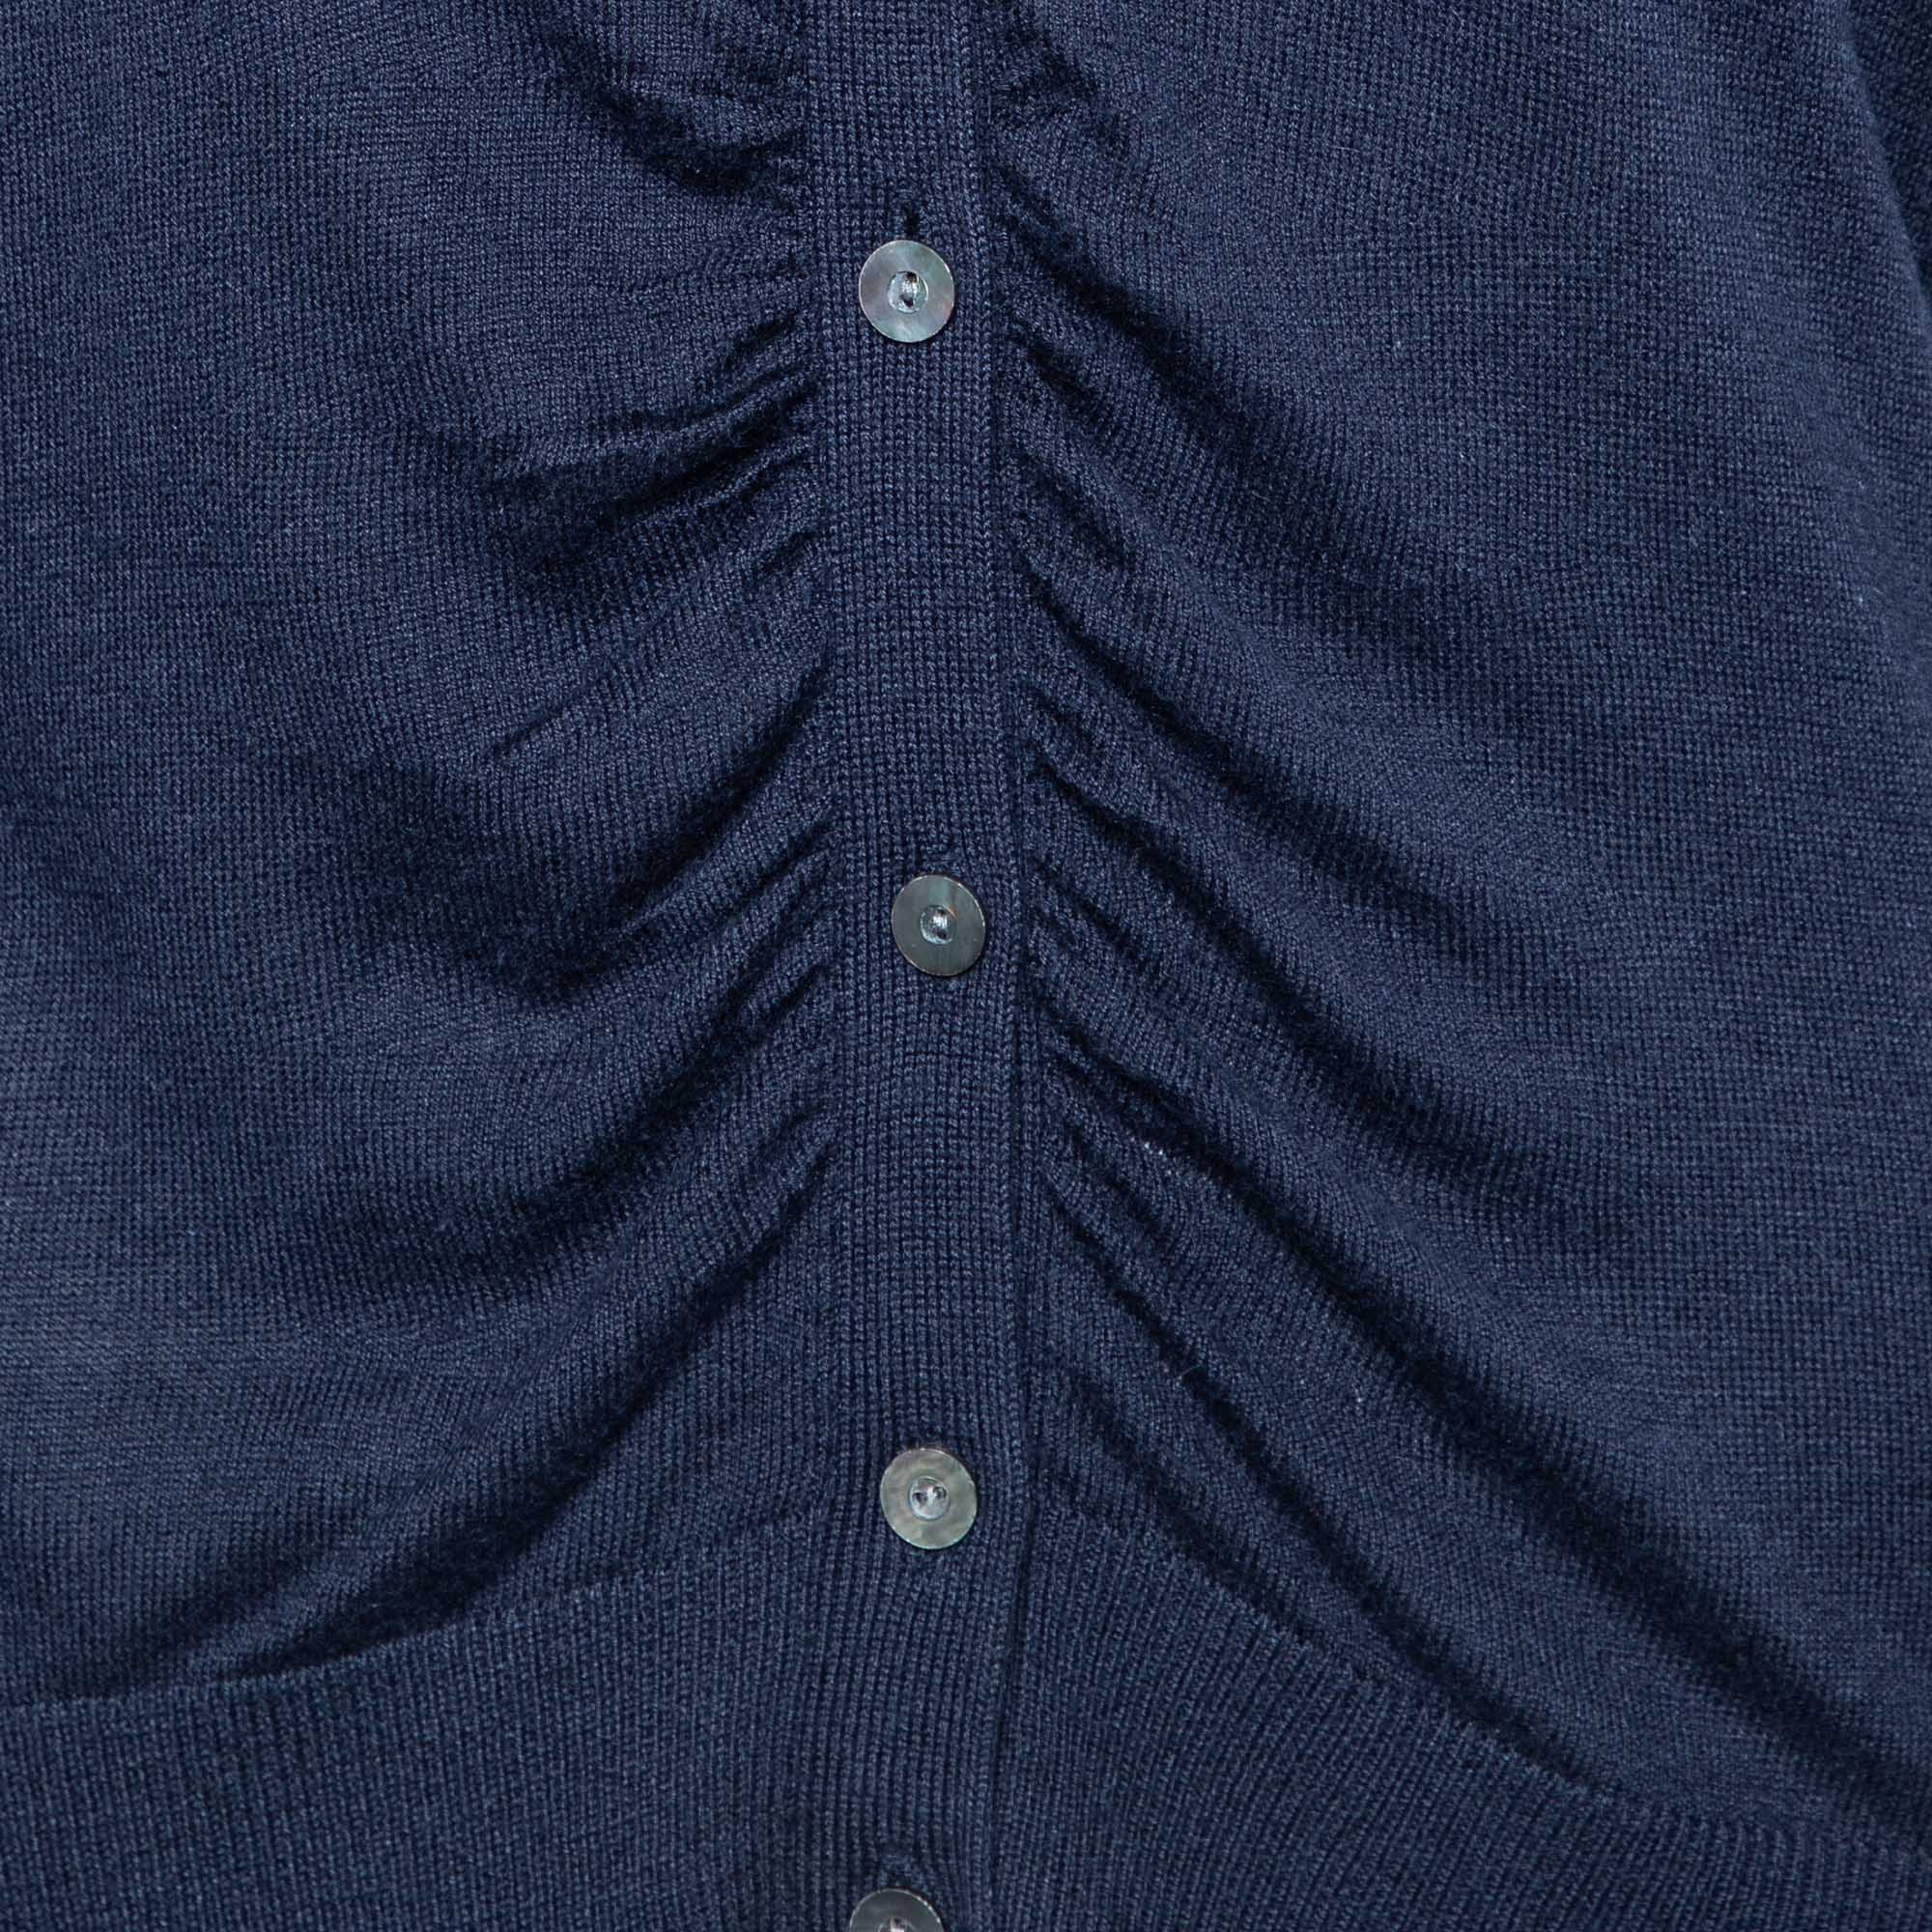 Diane Von Furstenberg Navy Blue Silk & Cashmere Knit Ruched Cardigan L